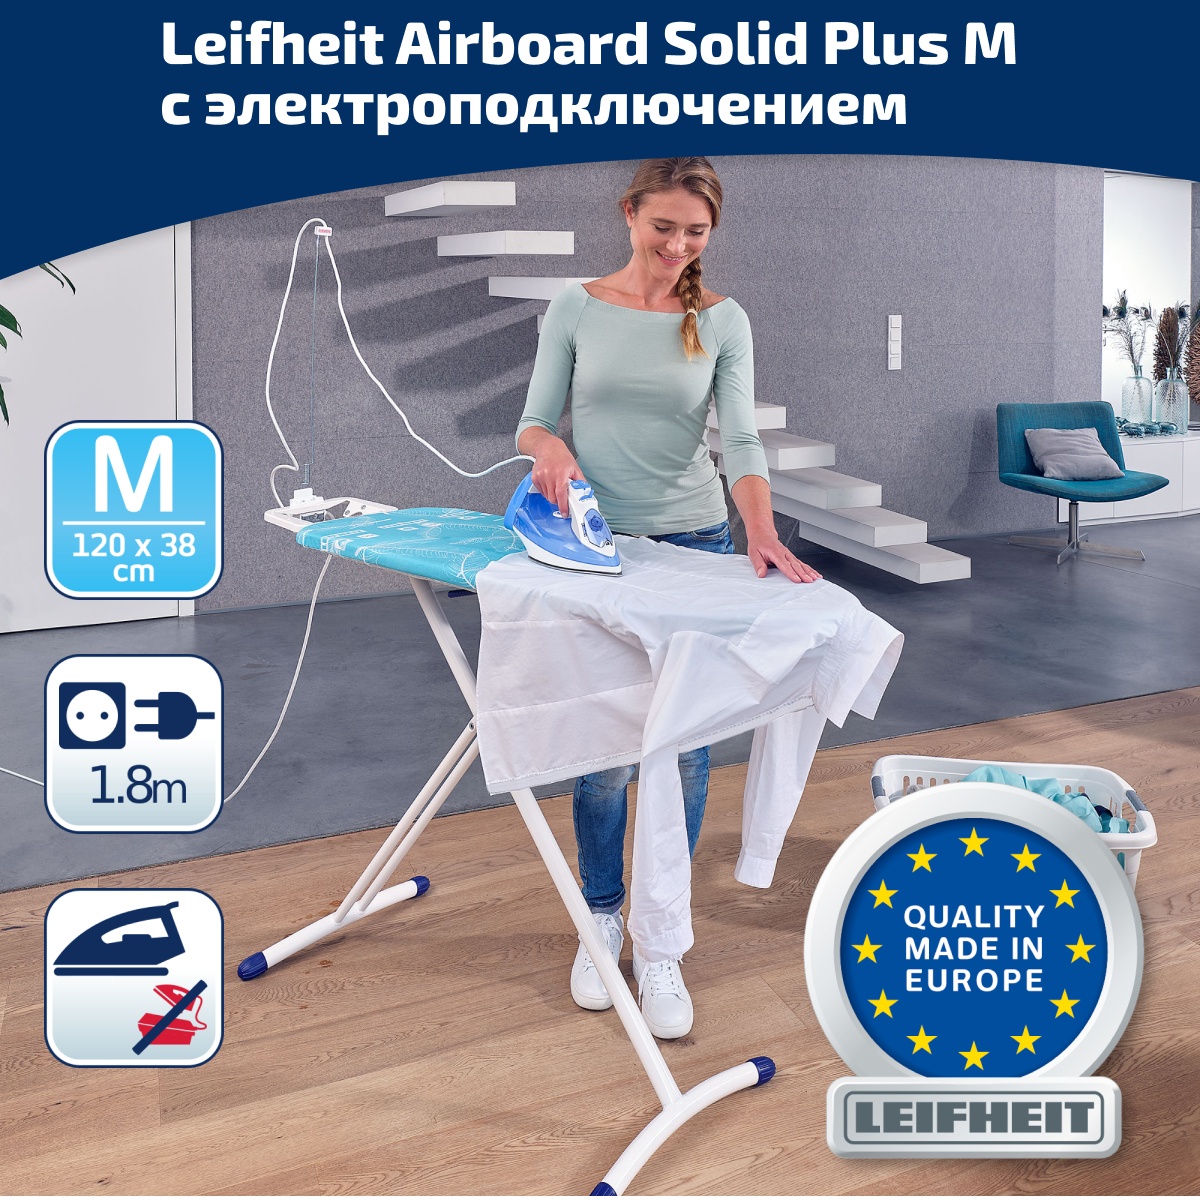 Гладильная доска с электроподключением Leifheit Airboard Solid Plus M 120х38см гладильная доска с электроподключением leifheit airboard solid plus m 120х38см